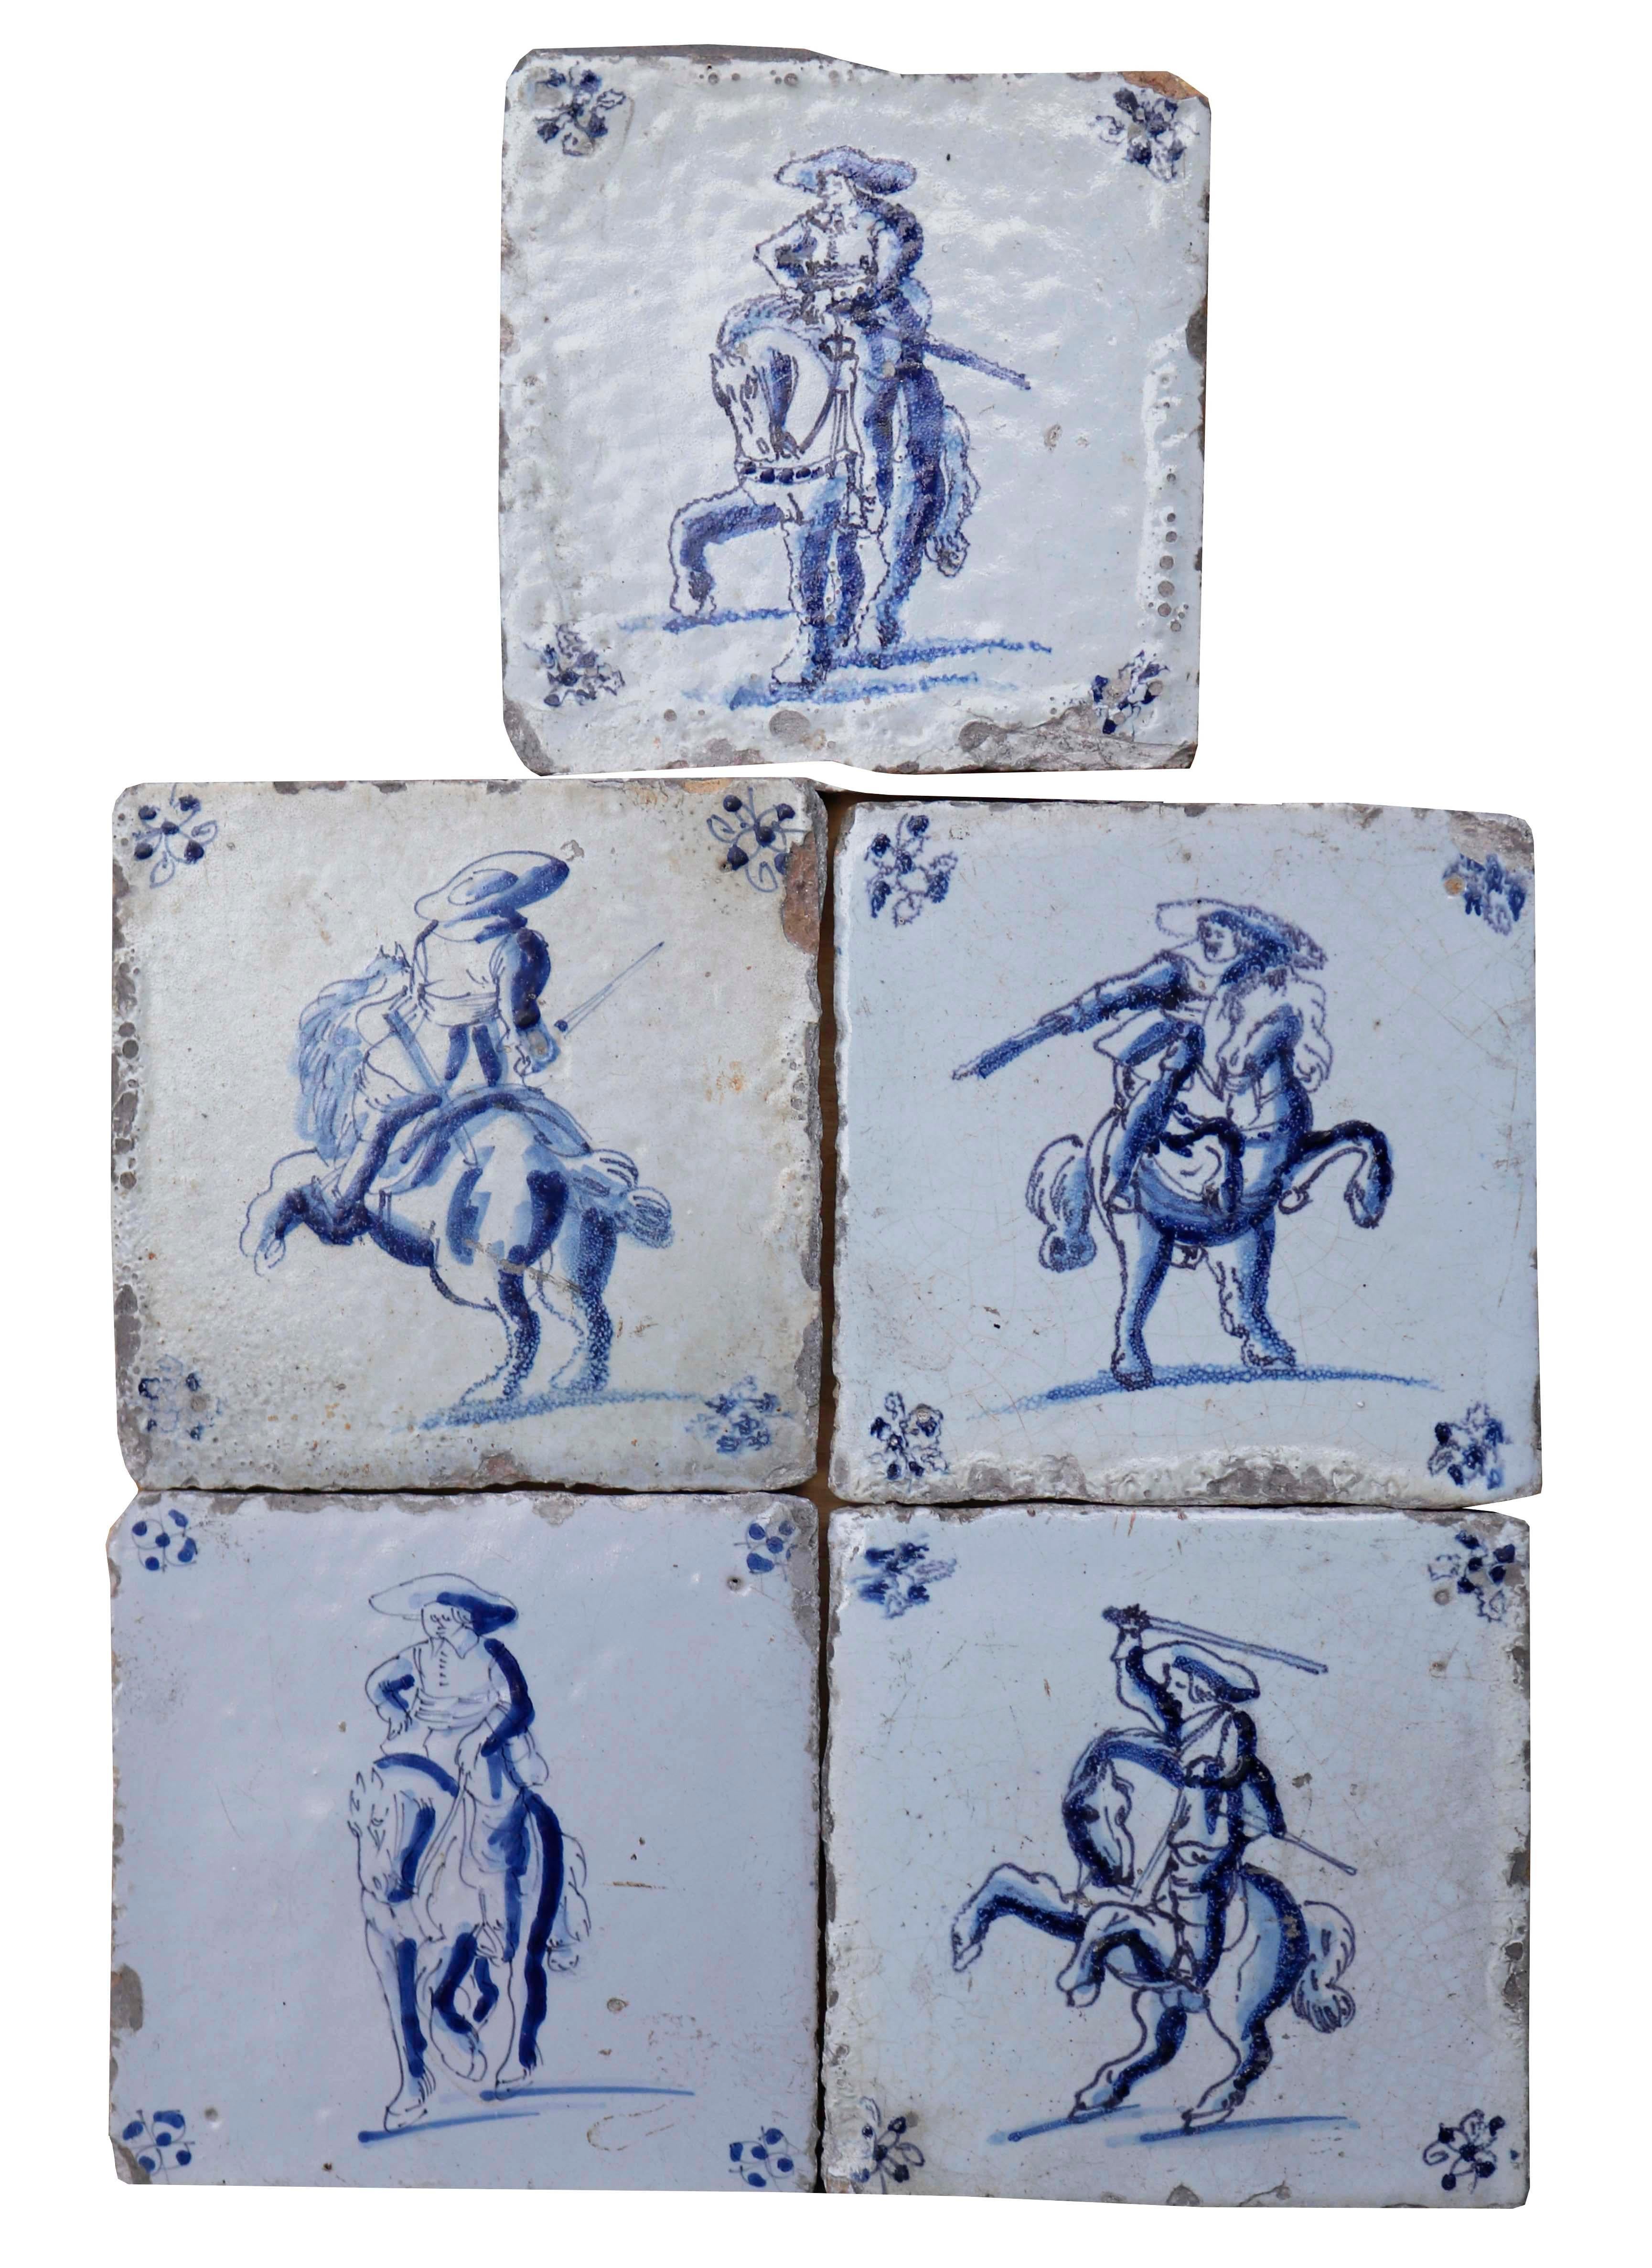 Fünf Delfter Fliesen mit Reitern. Diese charakteristischen Delfter Kacheln zeigen Soldaten zu Pferd in ausdrucksstarken blauen Farben auf weißem Hintergrund. Jedes Bild bietet eine wunderbare, einzigartige Illustration.

Zusätzliche